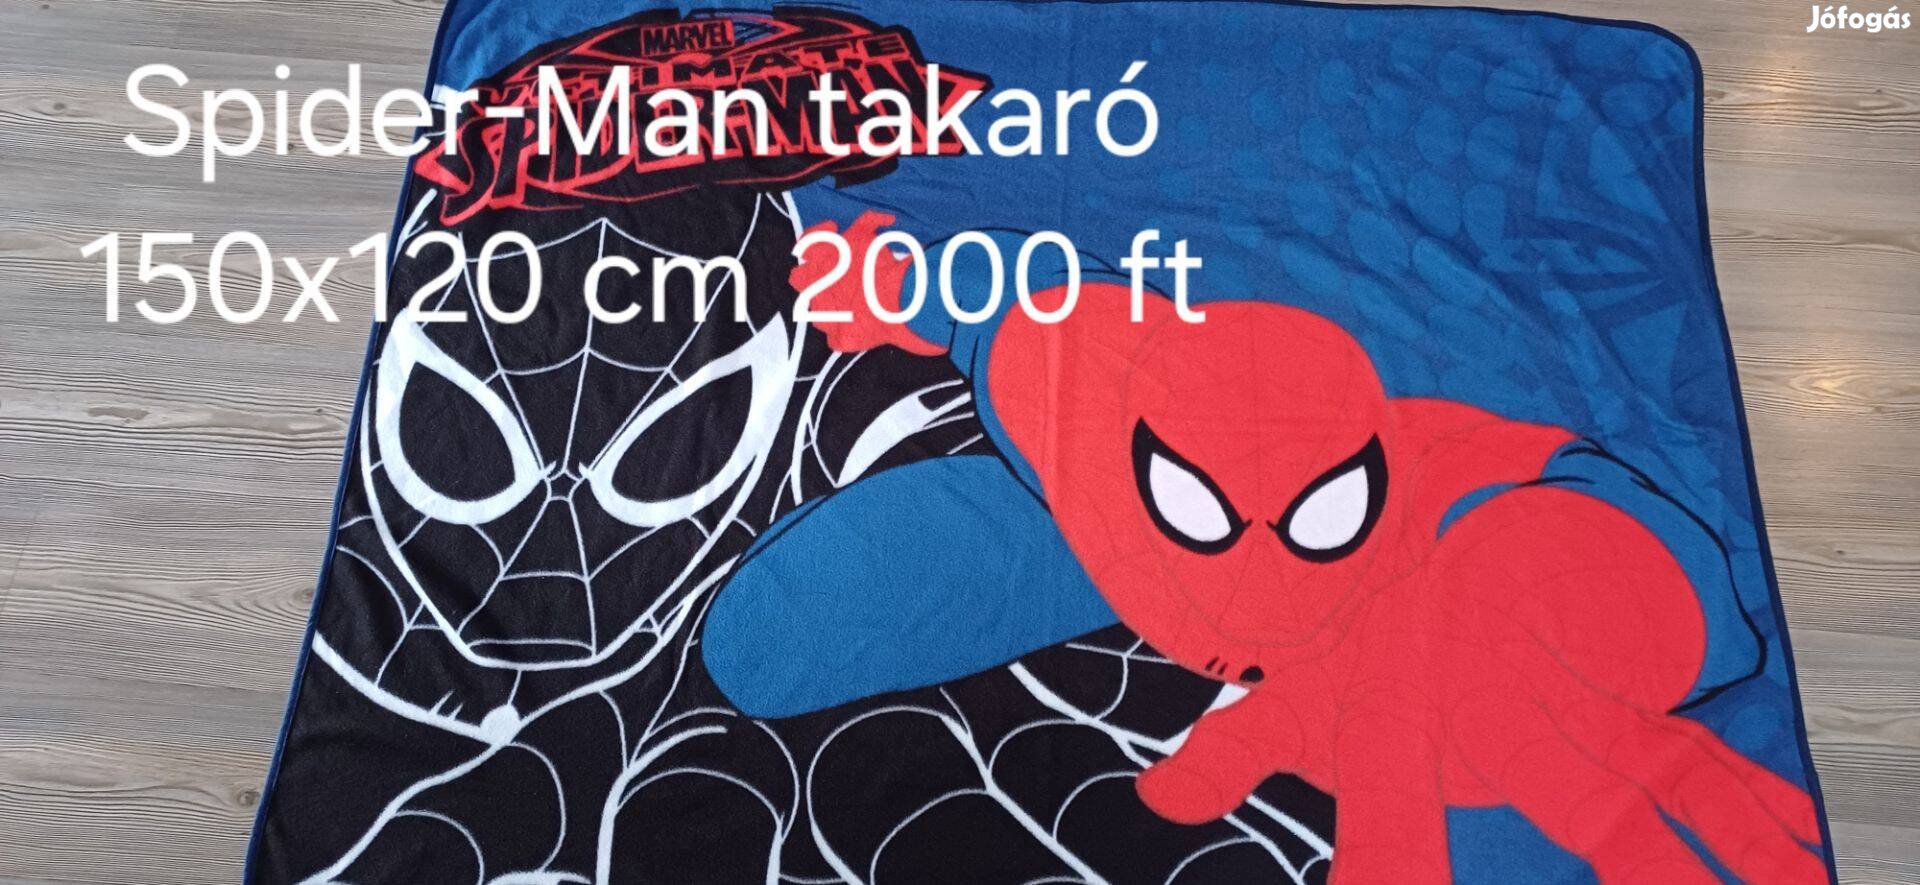 Spider-Man takaró 150 cm x 120 cm